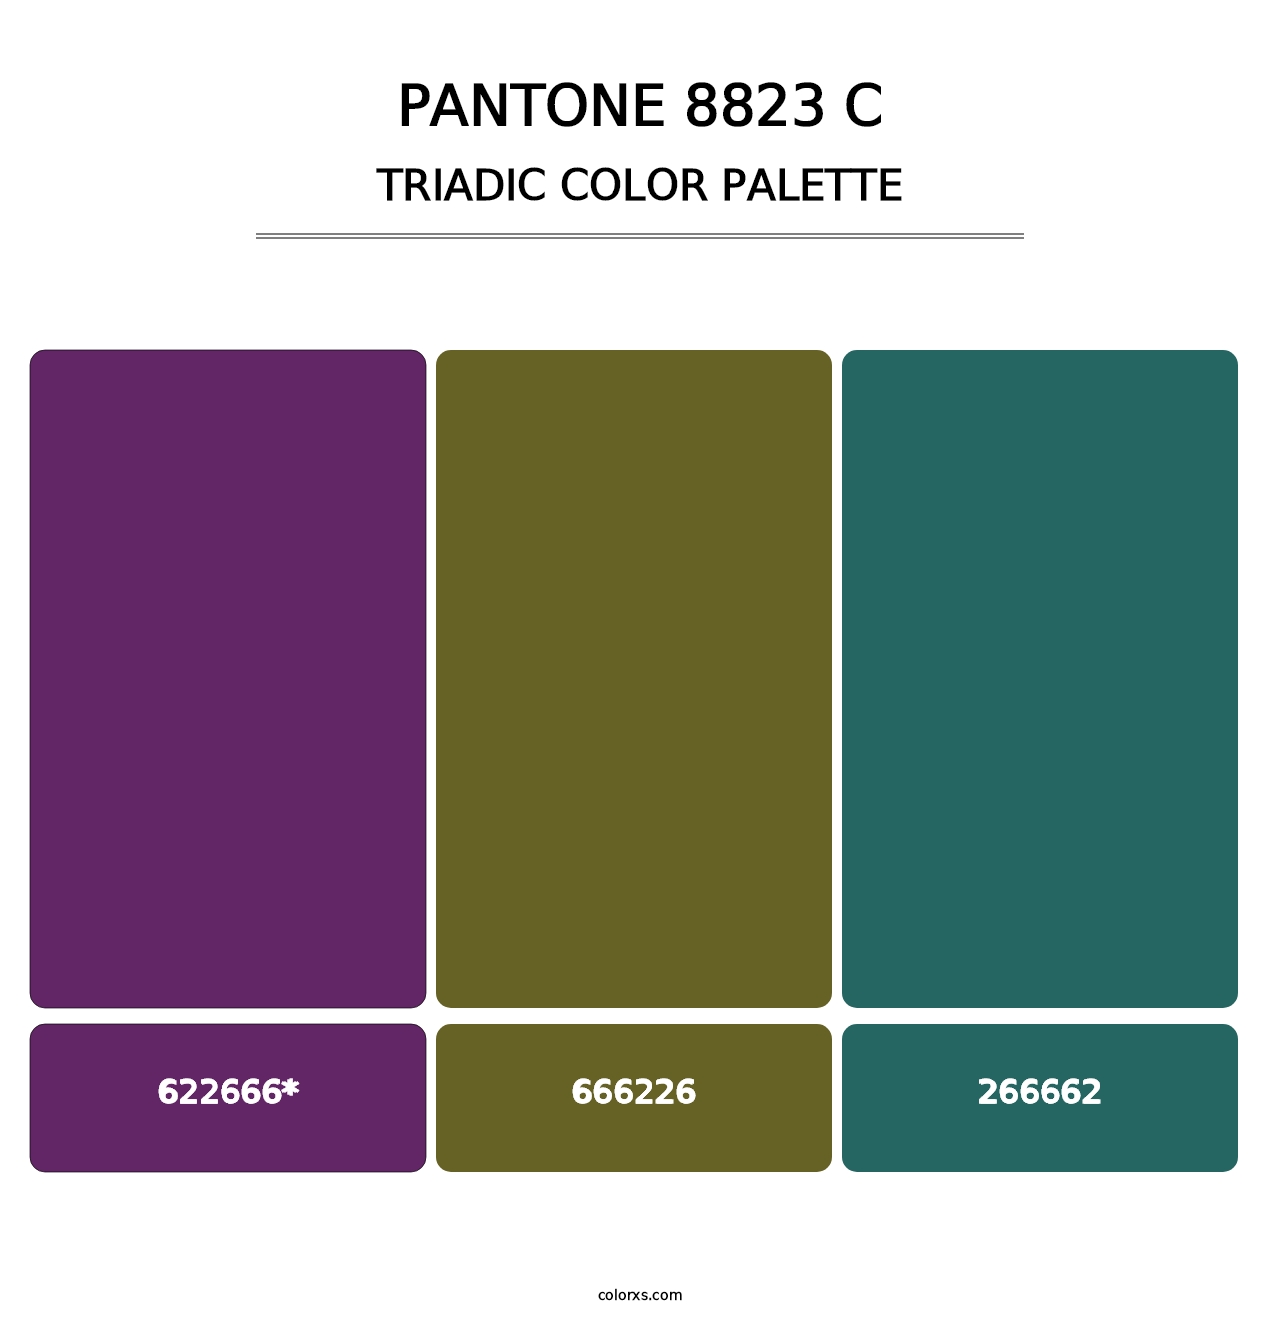 PANTONE 8823 C - Triadic Color Palette